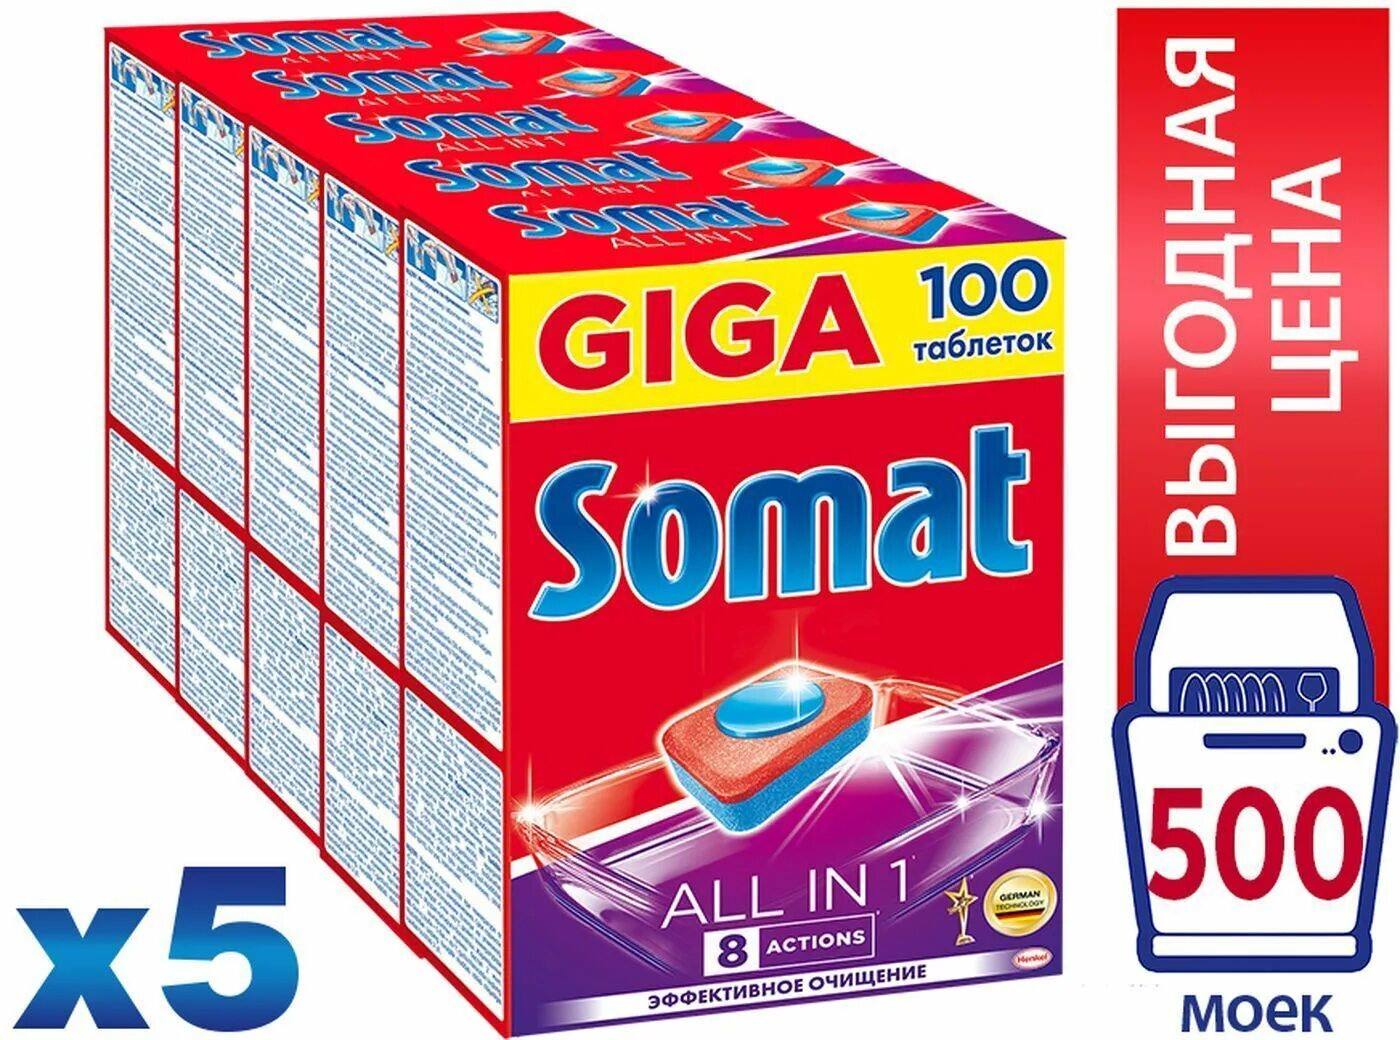 Somat all in 1 таблетки для посудомоечной машины. Таблетки Somat 100 шт. Somat таблетки для посудомоечных машин 120 шт. Somat таблетки для посудомоечной машины Somat all in 1 100 шт.